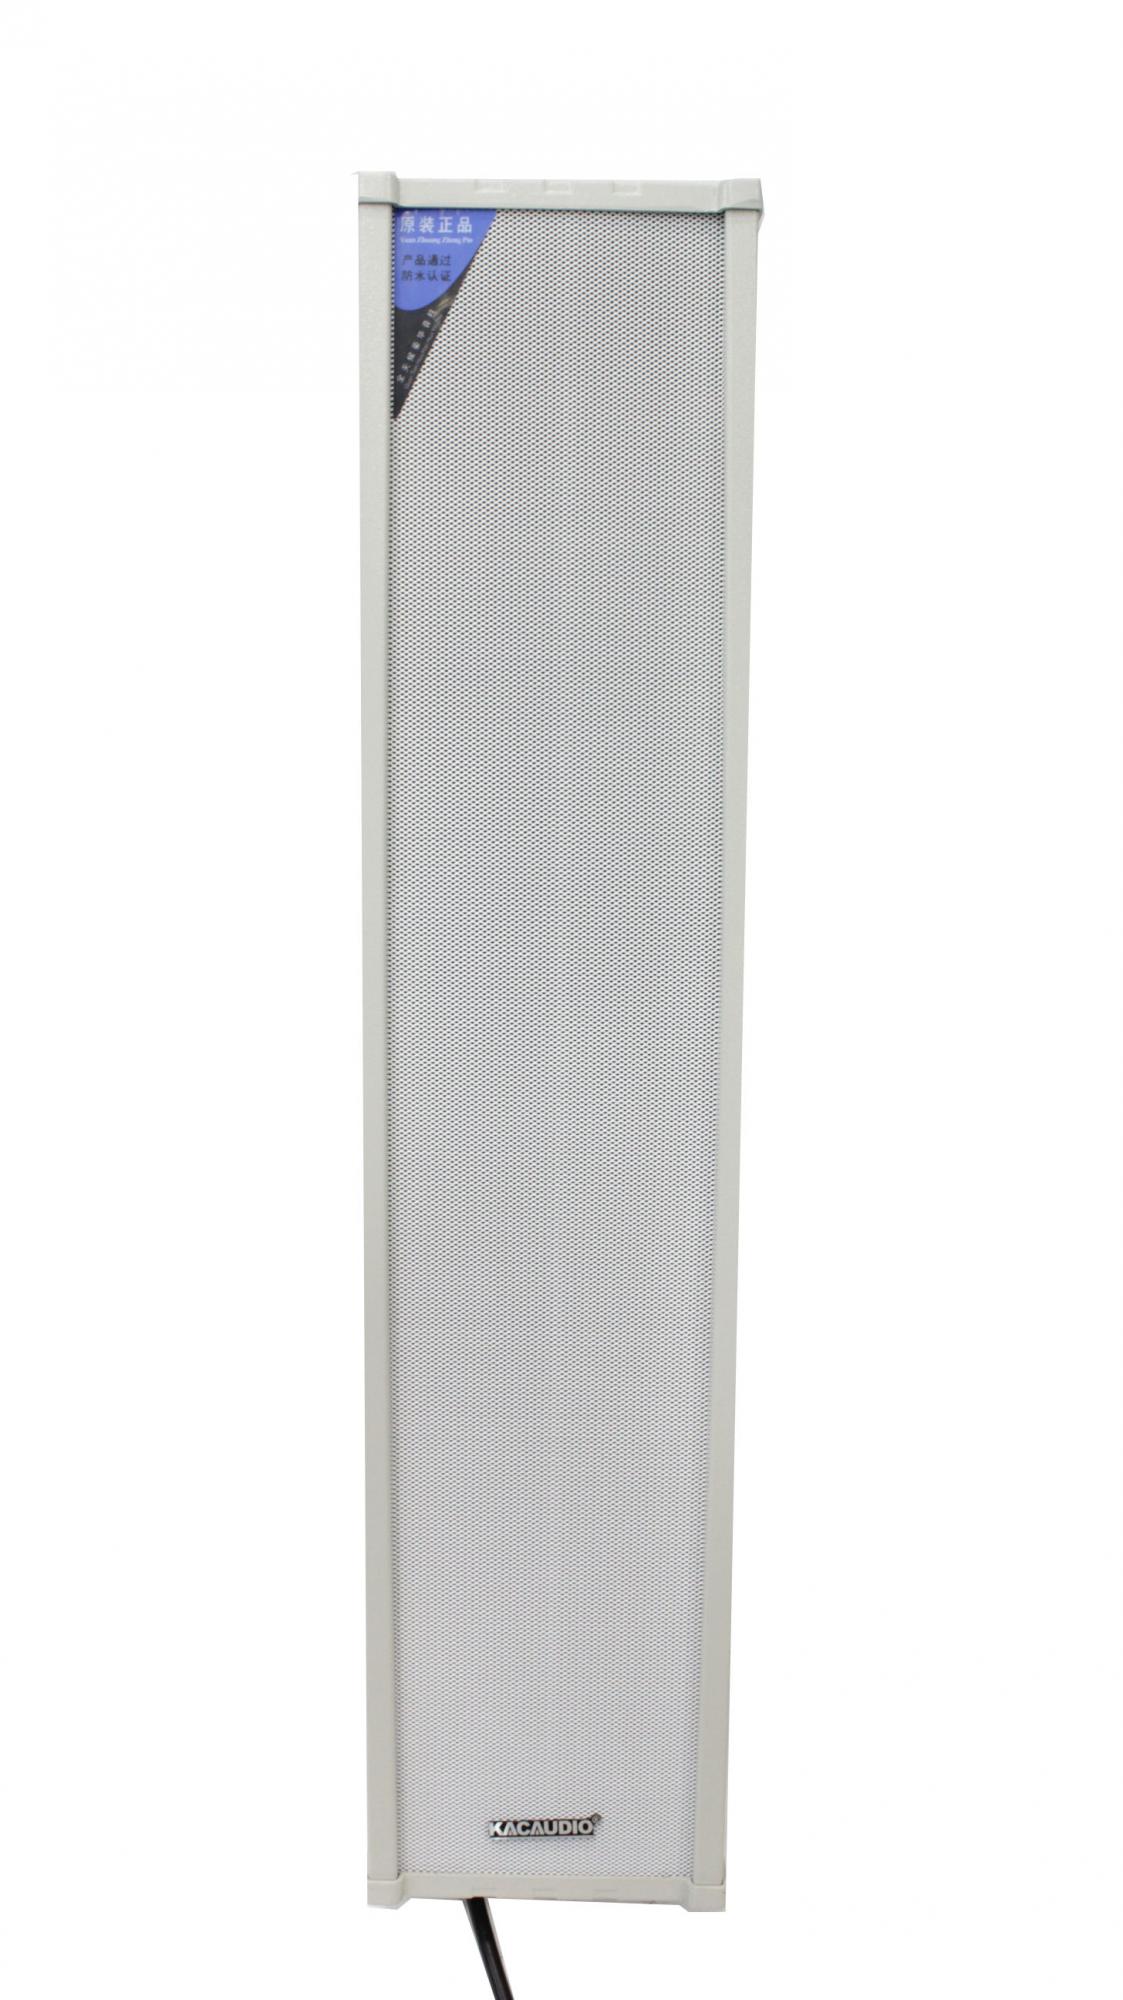 Изображение KACAUDIO Настенные трансляционные динамики 60 W, прямоугольные высокие белые, всепогодные